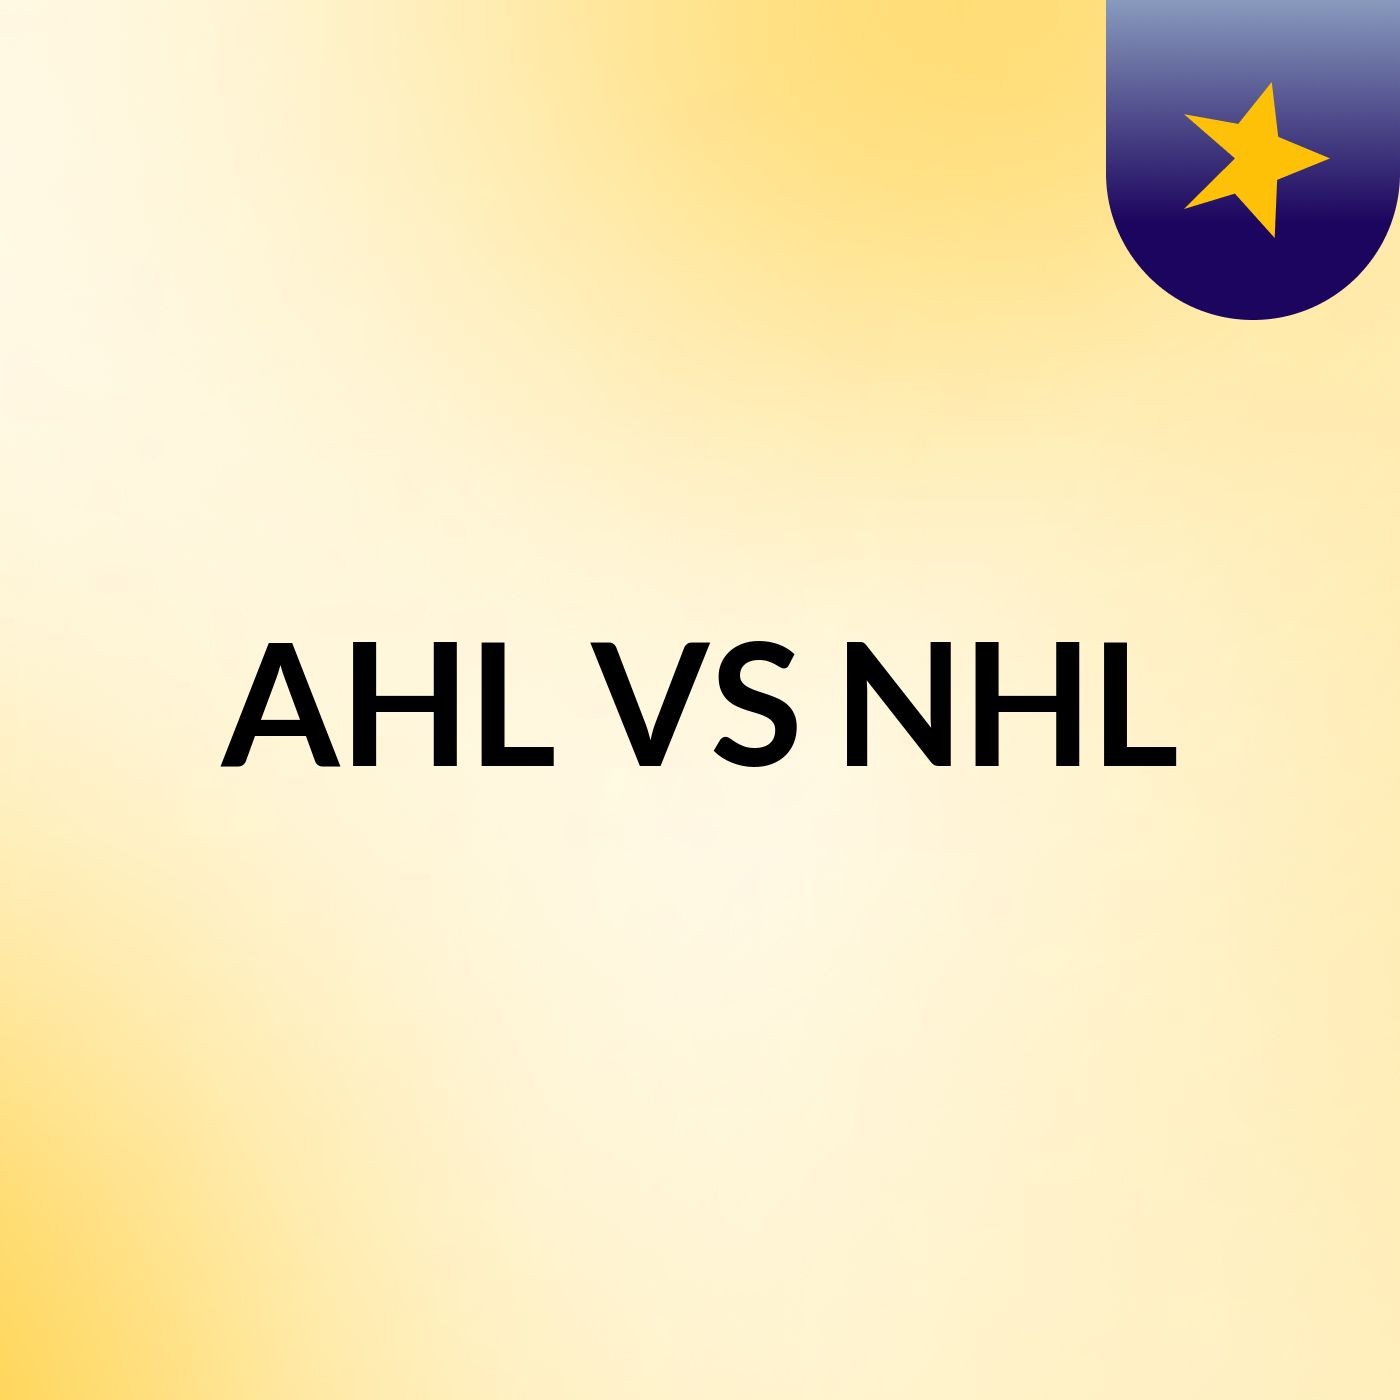 AHL VS NHL